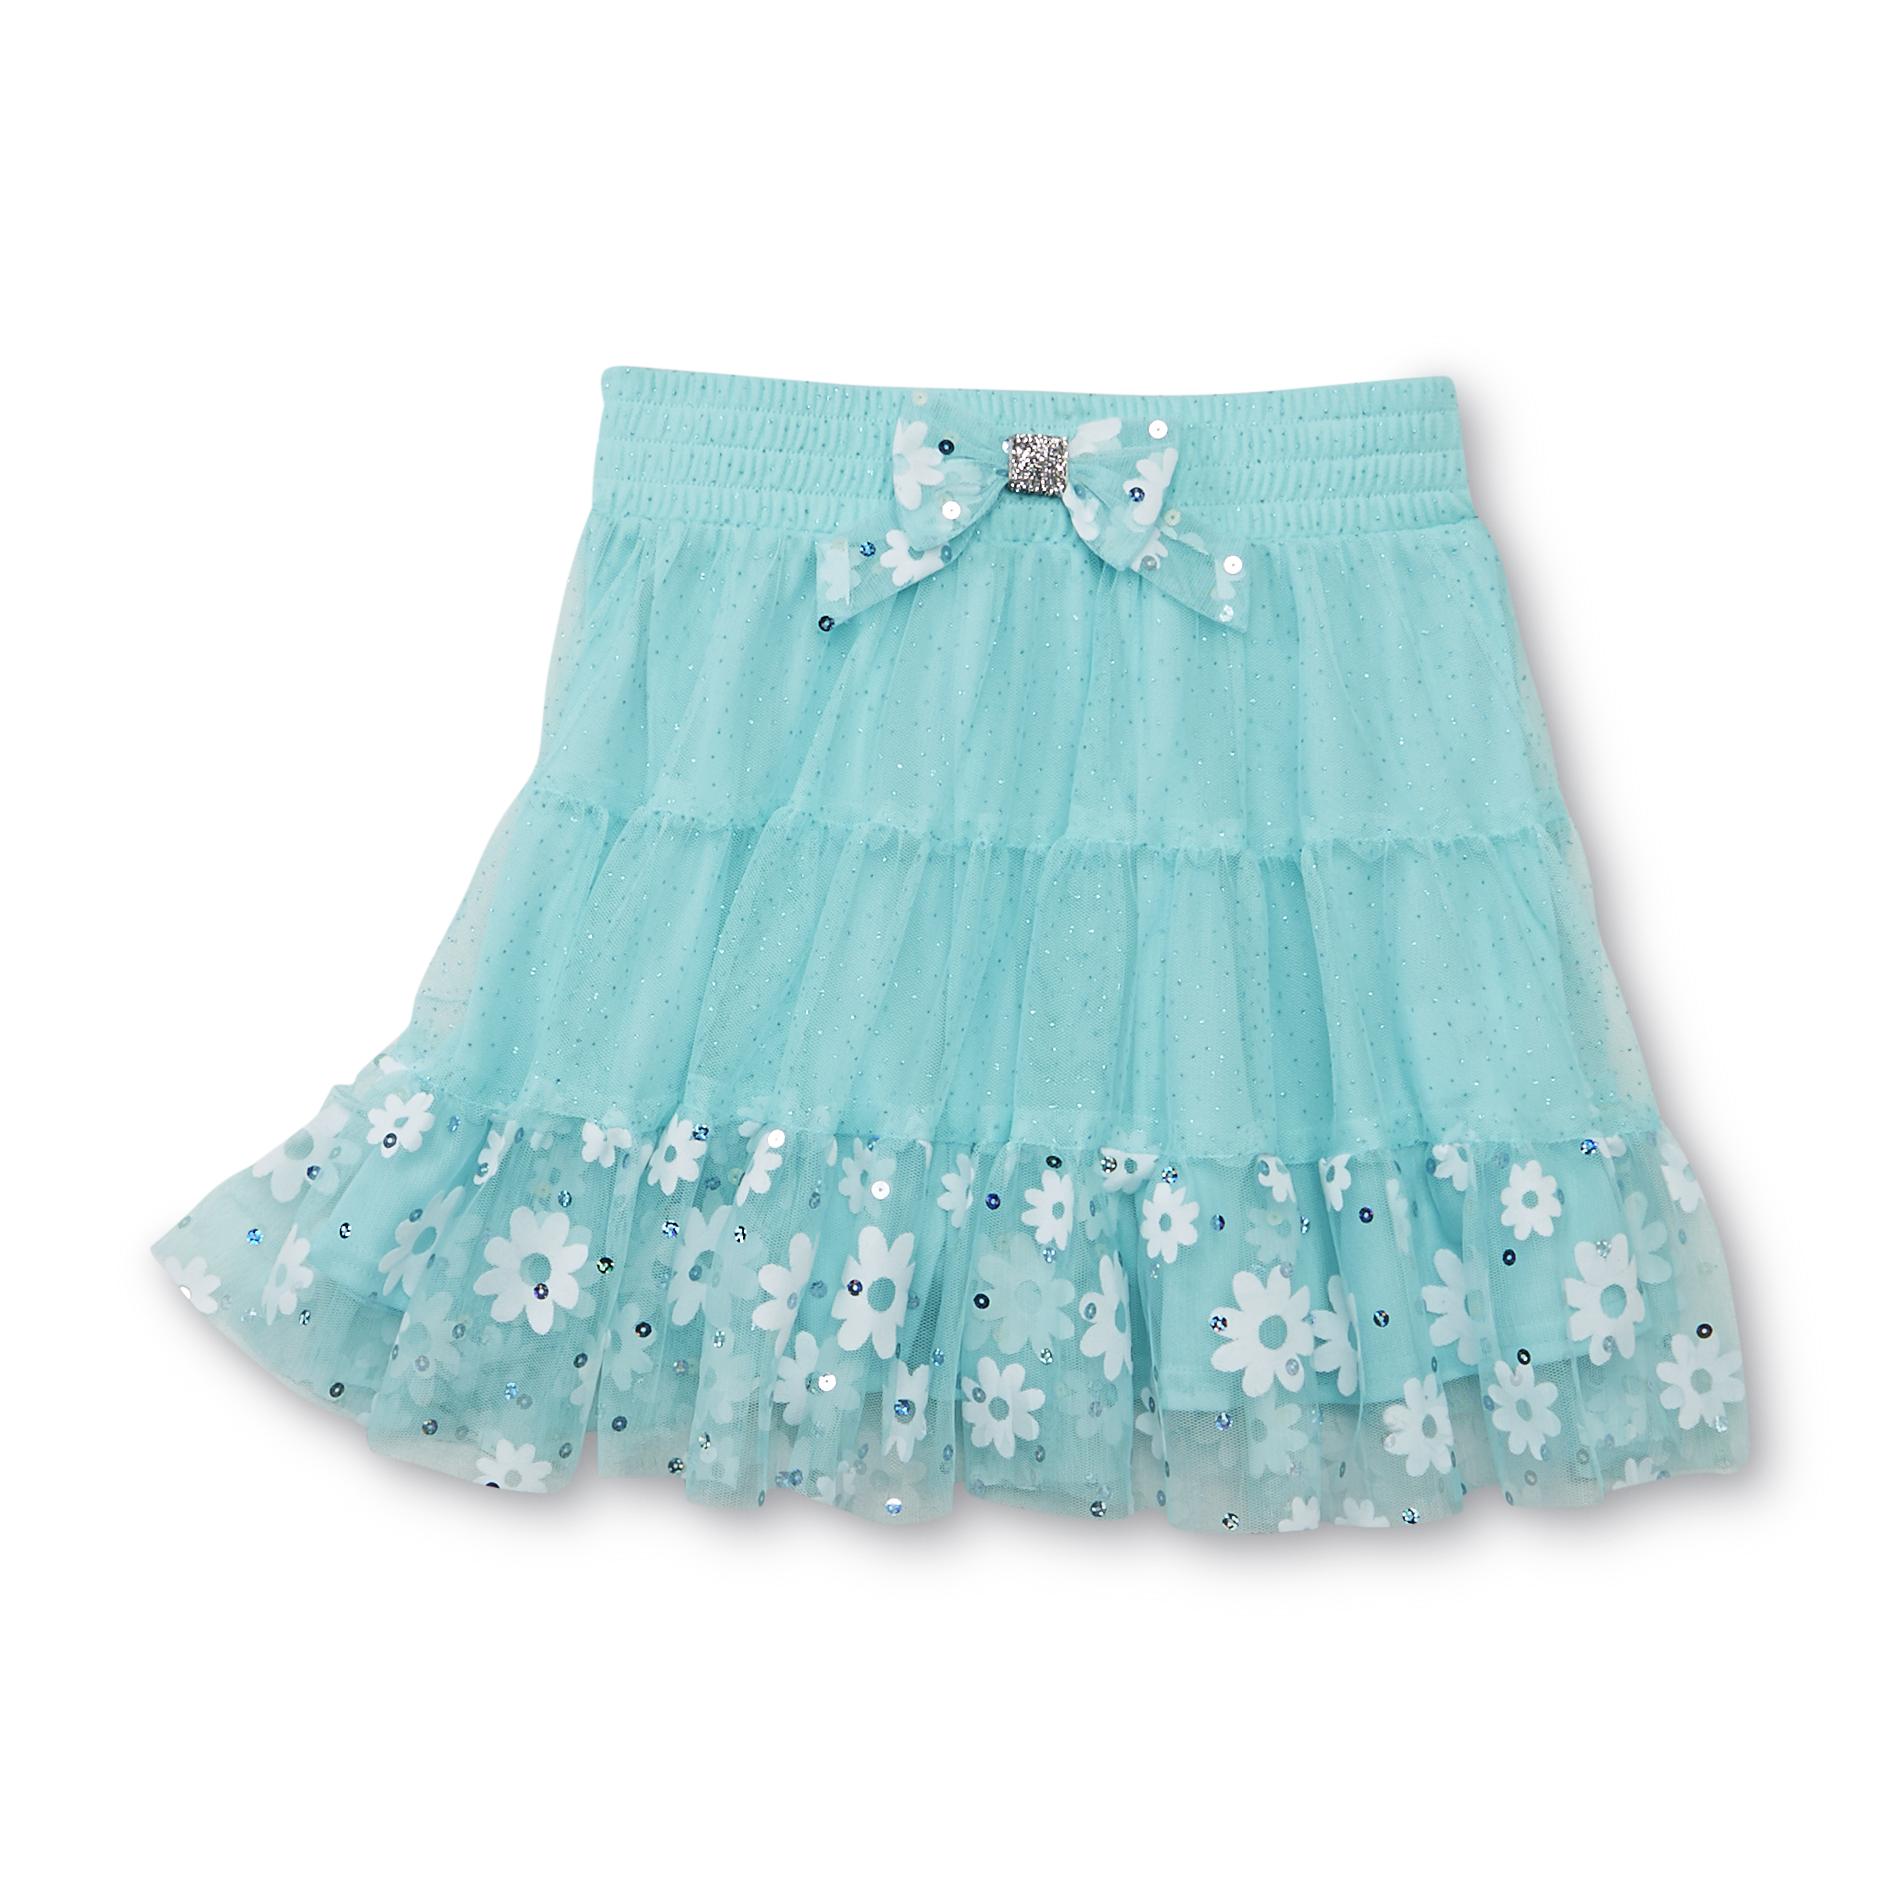 Sophia Grace & Rosie Girl's Glitter & Sequin Mesh Skirt - Daisies